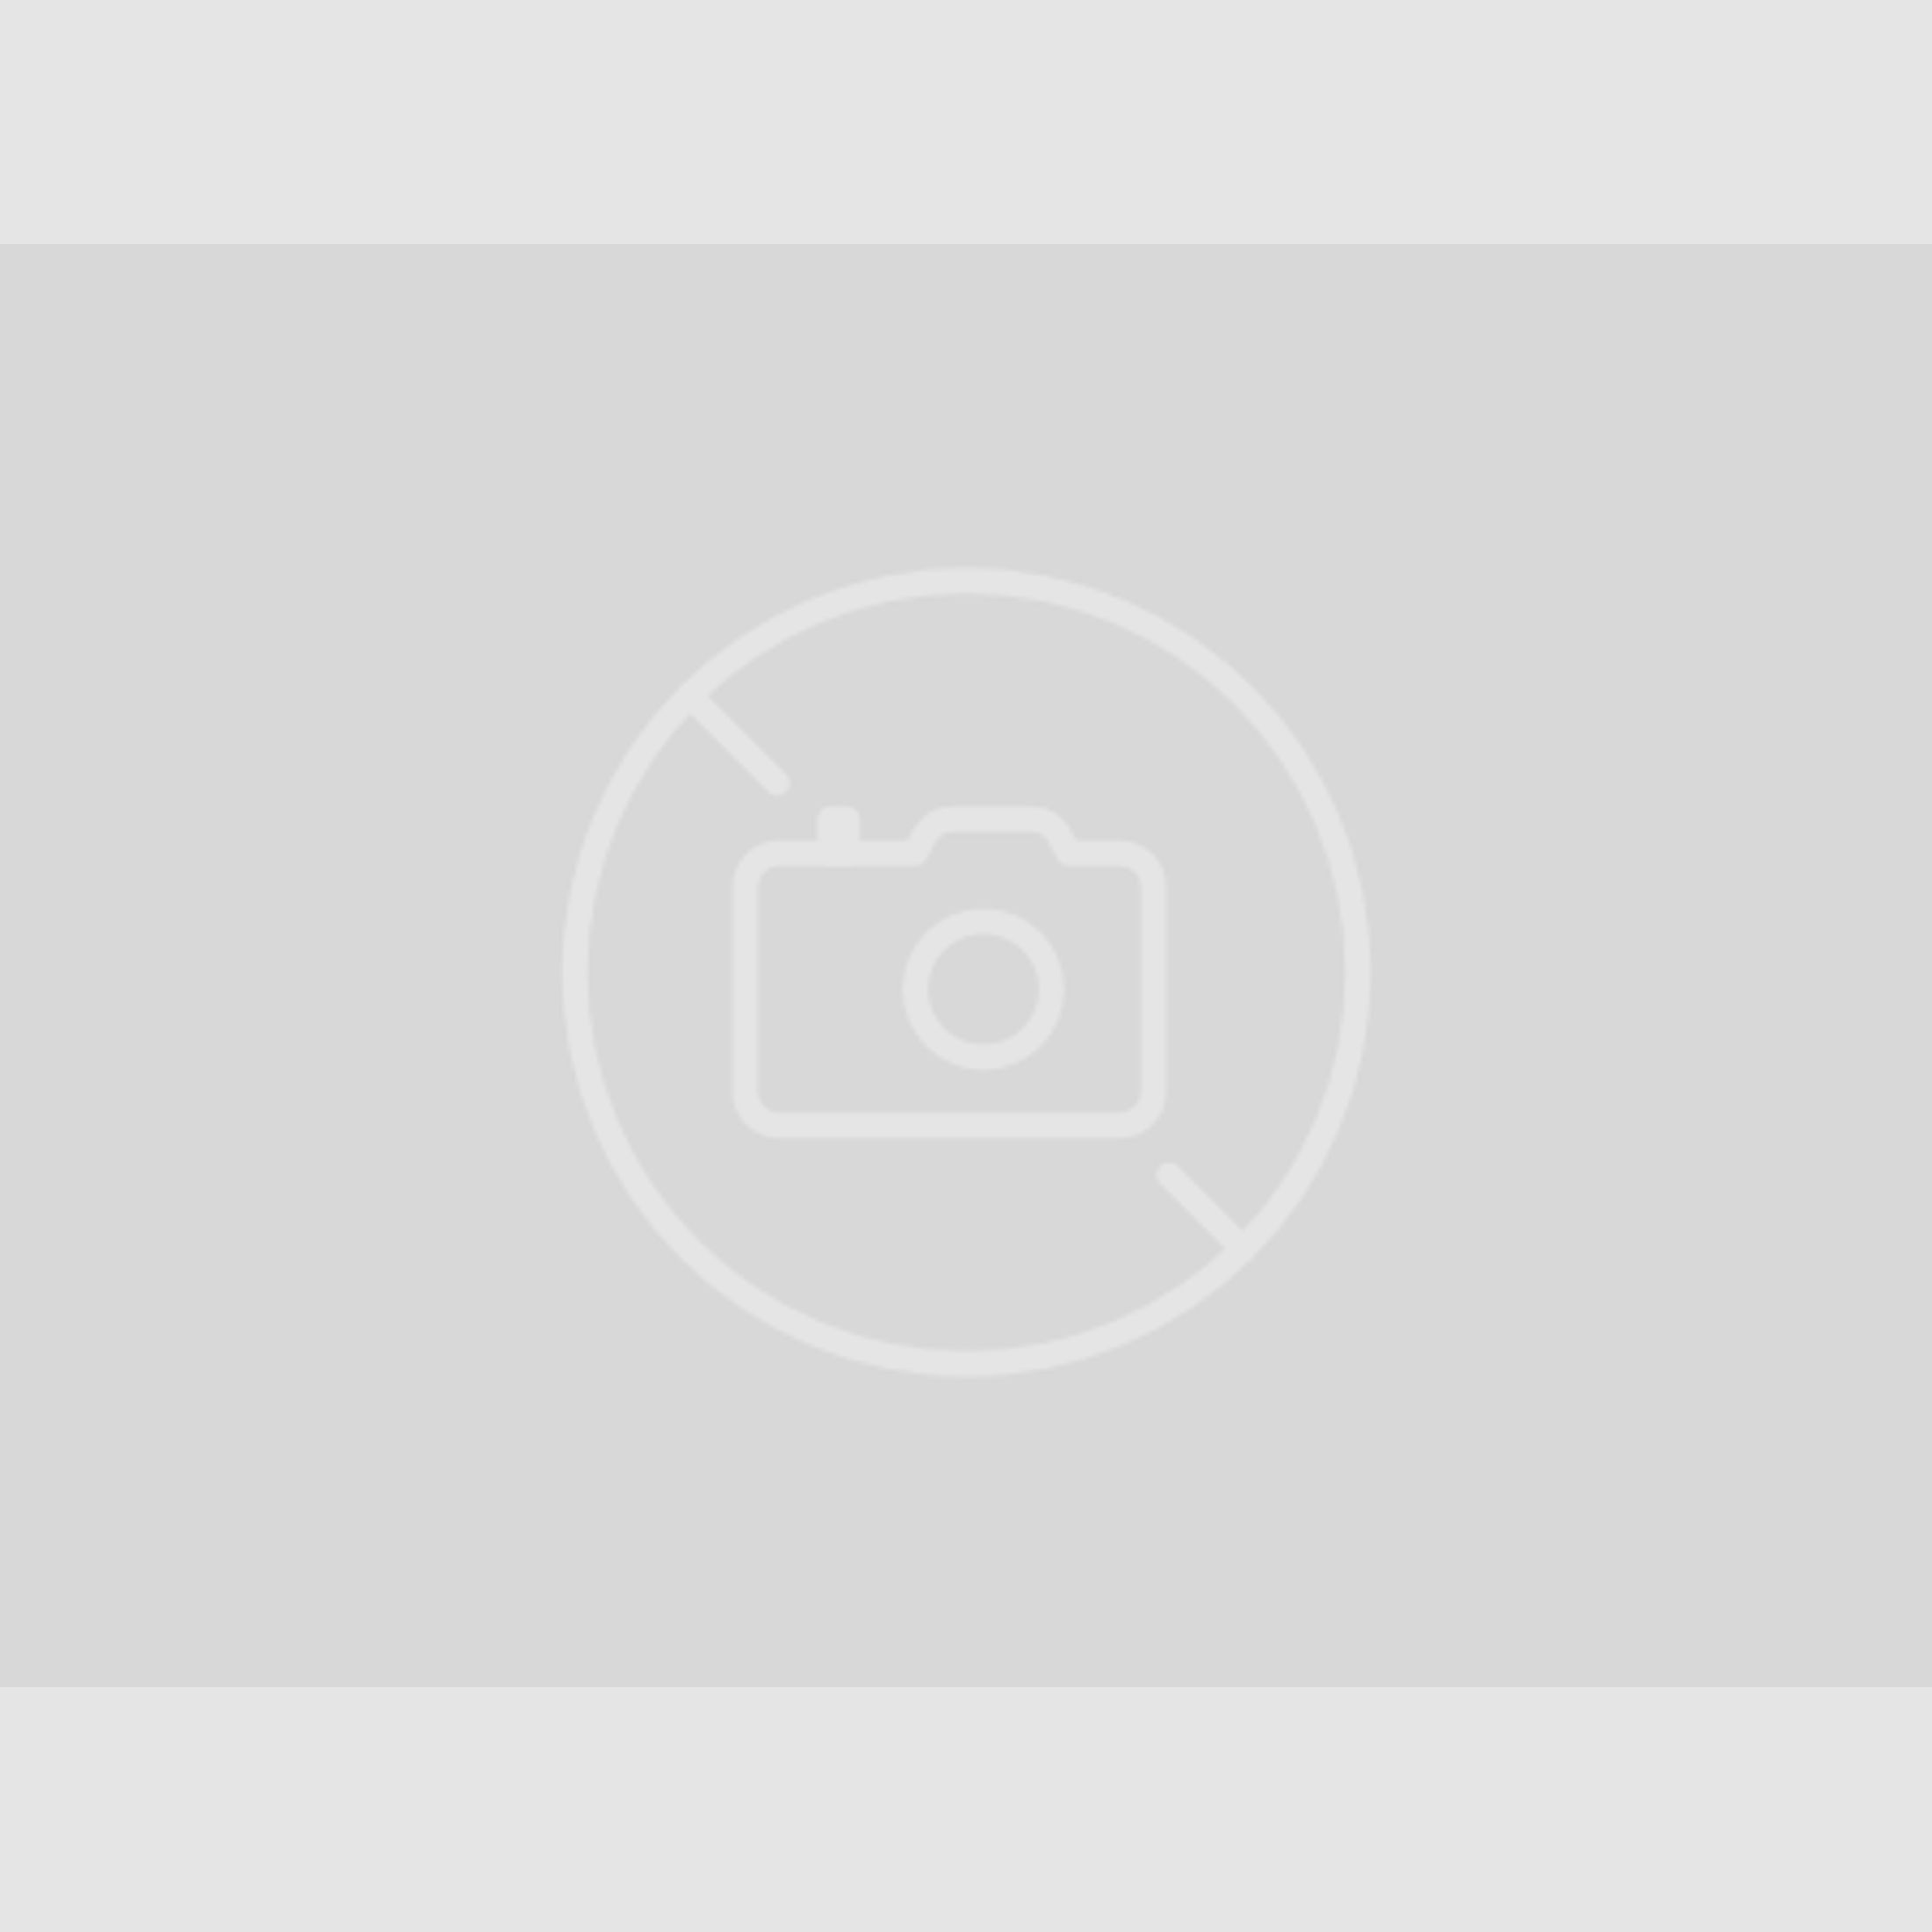 Buchner Zoraki 918 chrom Sondermodell 9mm PAK